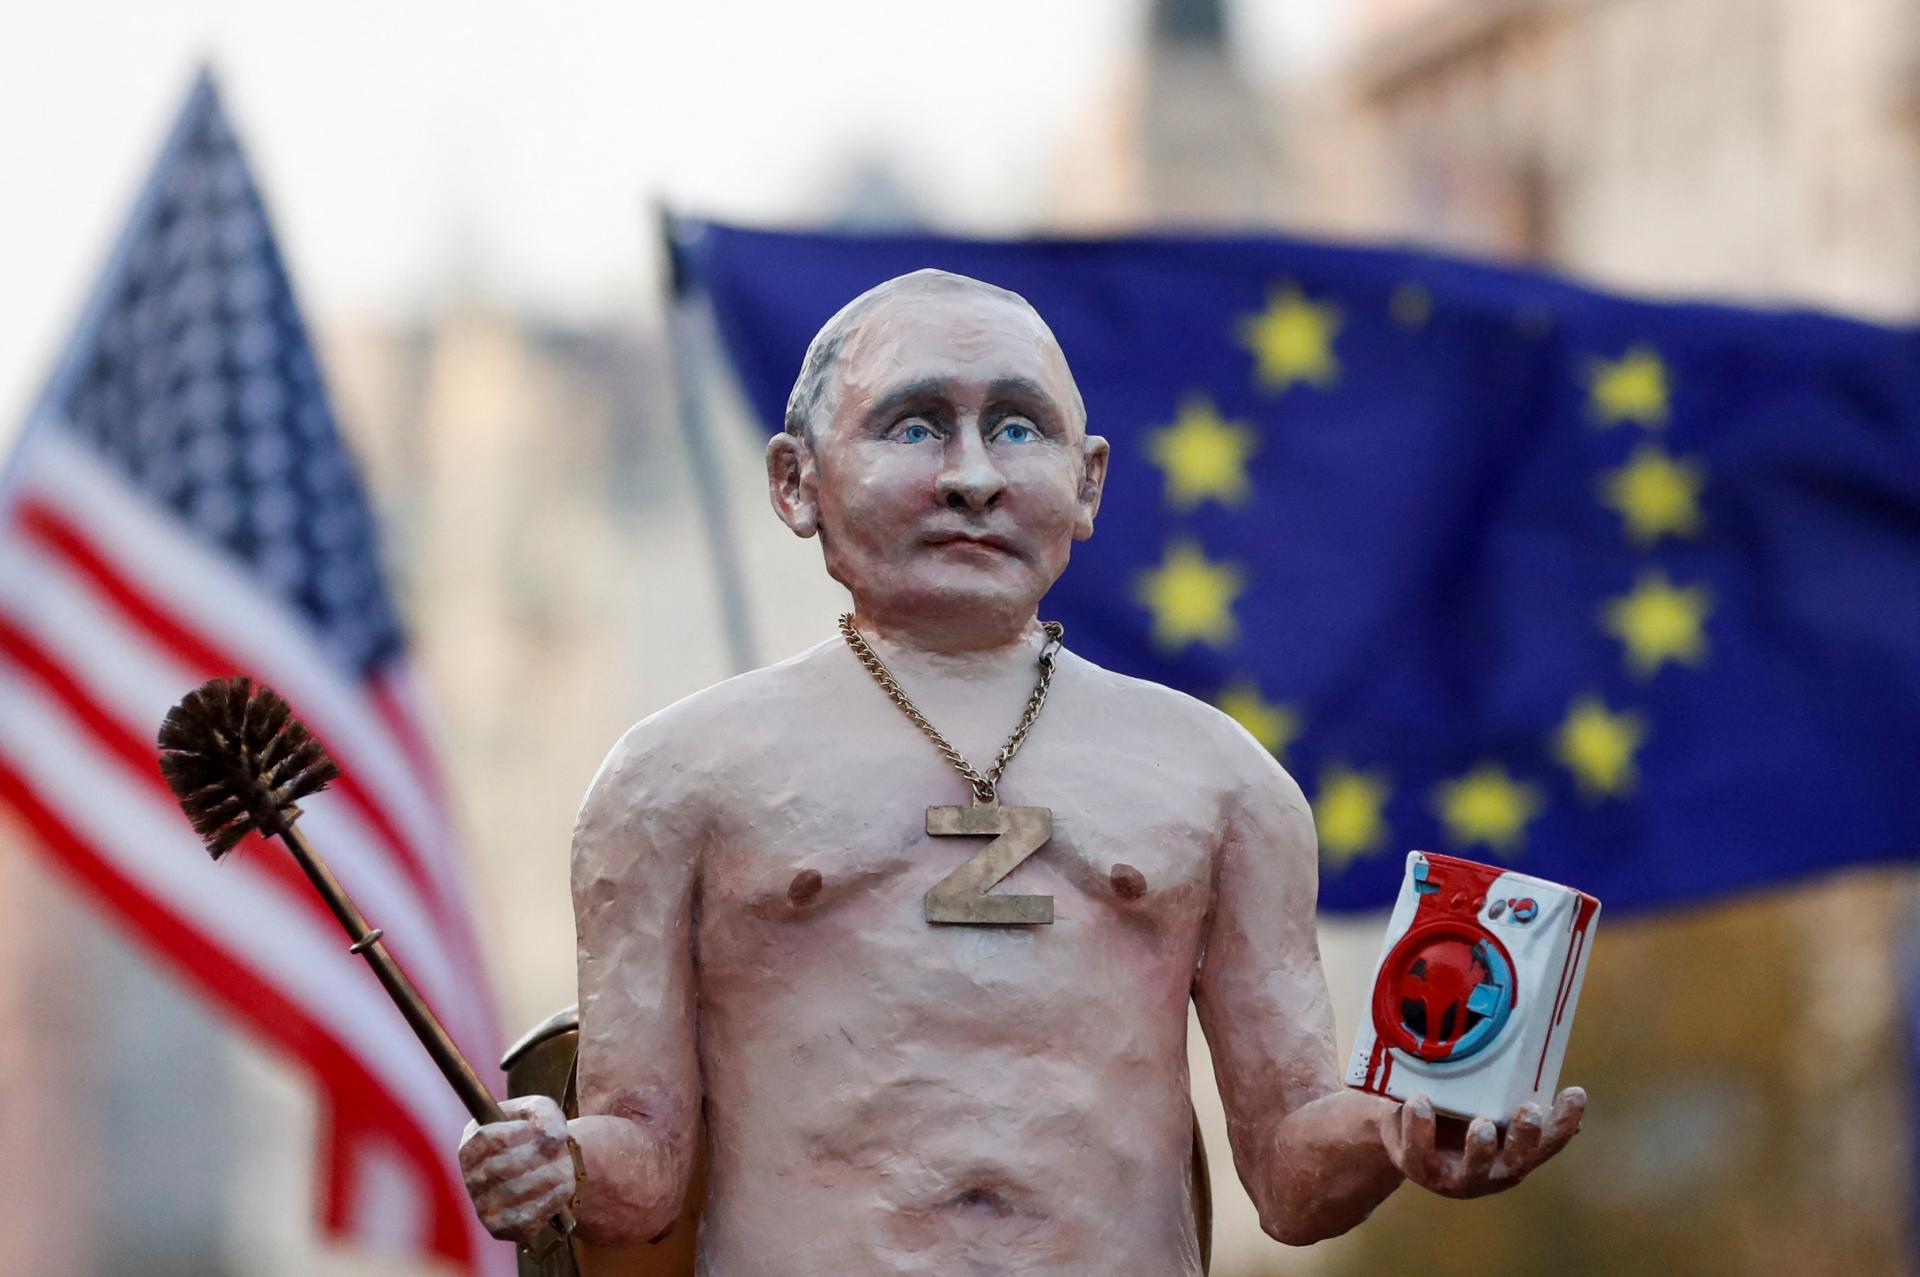 Skončí Putin ako zavraždený Caesar? Blokovať prístavy a dobývať susedov sa často vypomstí